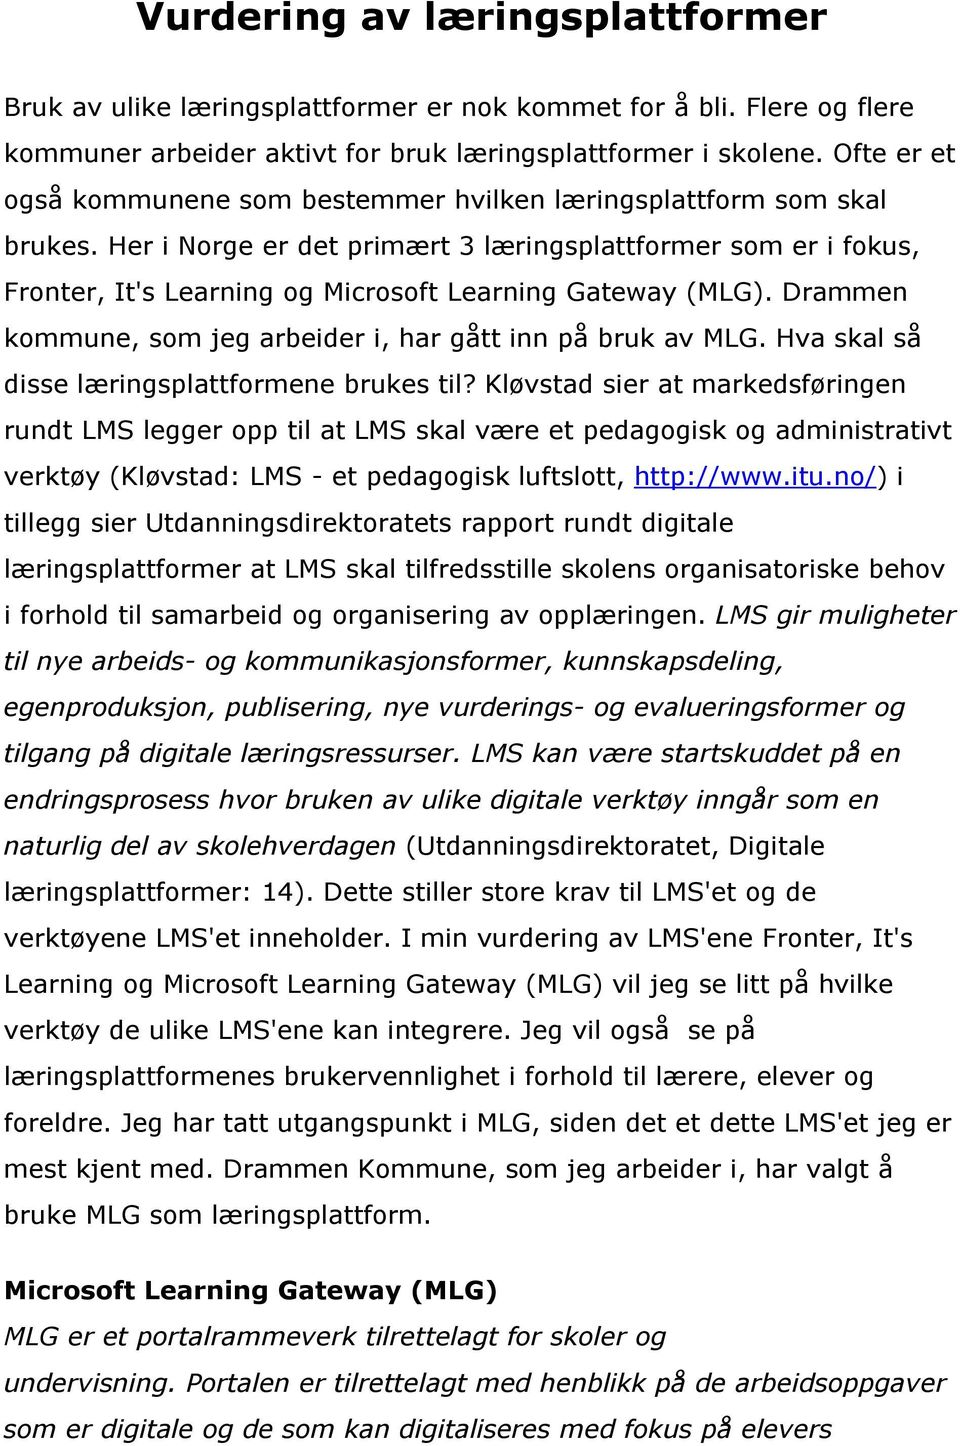 Her i Norge er det primært 3 læringsplattformer som er i fokus, Fronter, It's Learning og Microsoft Learning Gateway (MLG). Drammen kommune, som jeg arbeider i, har gått inn på bruk av MLG.